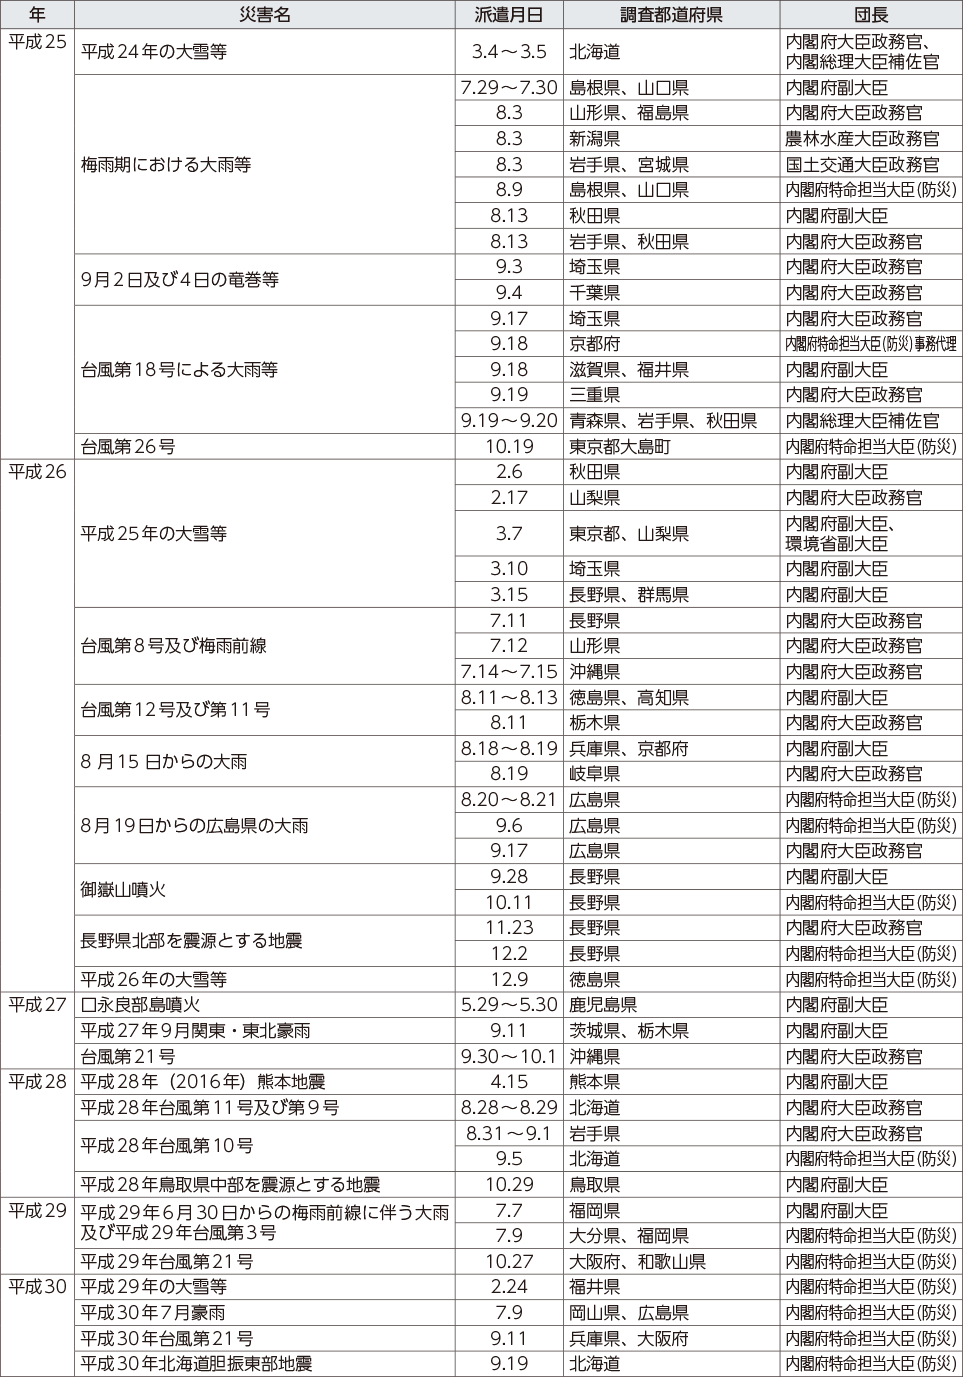 附属資料11　政府調査団の派遣状況（阪神・淡路大震災以降）（2）